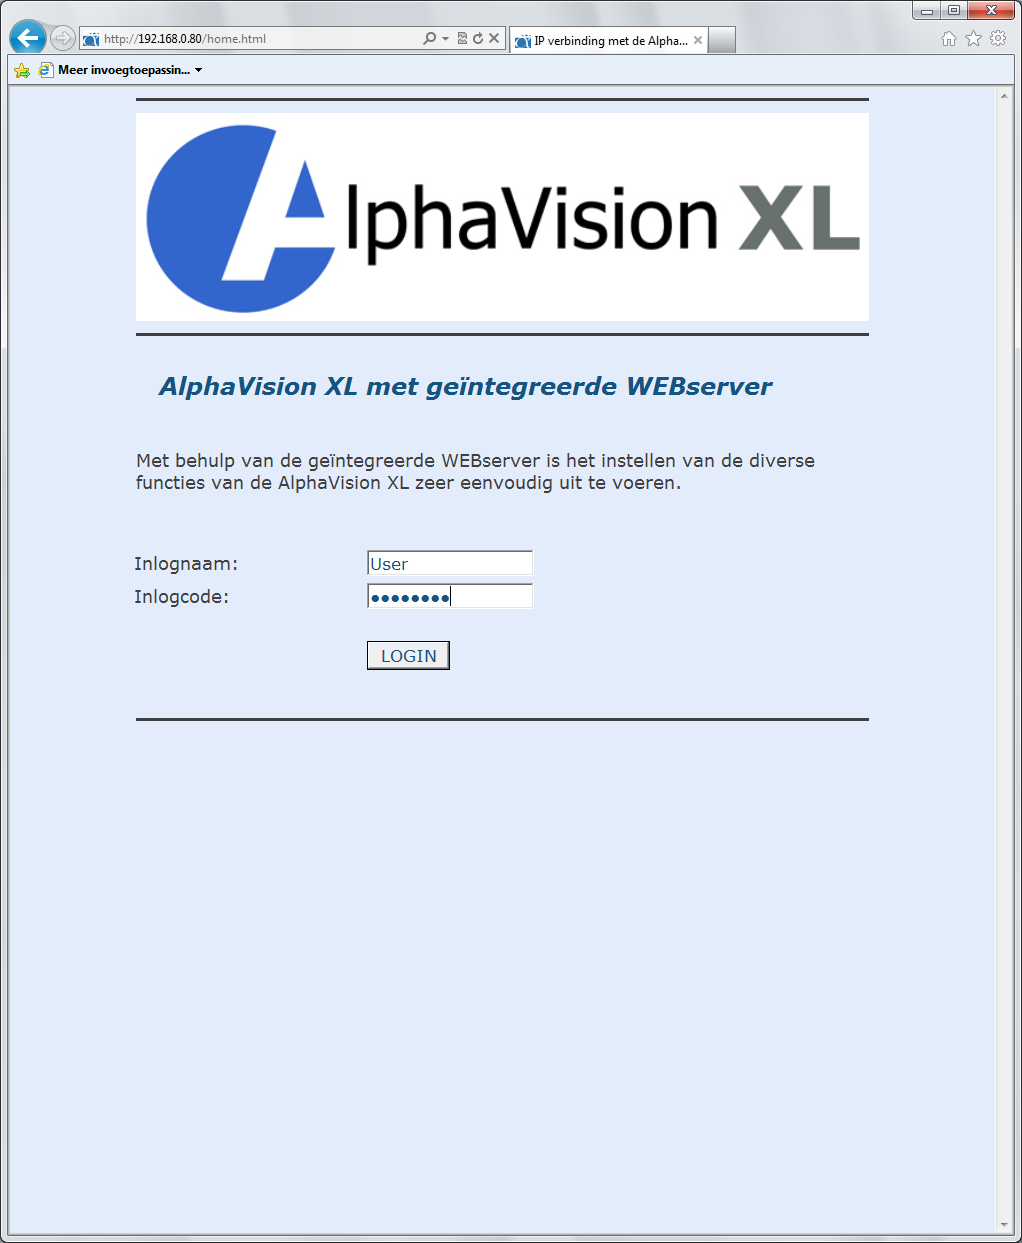 Het inlogscherm van de AlphaVision XL verschijnt. Toets de inlognaam en inlogcode in. De standaard inlognaam (voor de BEHEERDER) is User en de standaard inlogcode ChangeMe.